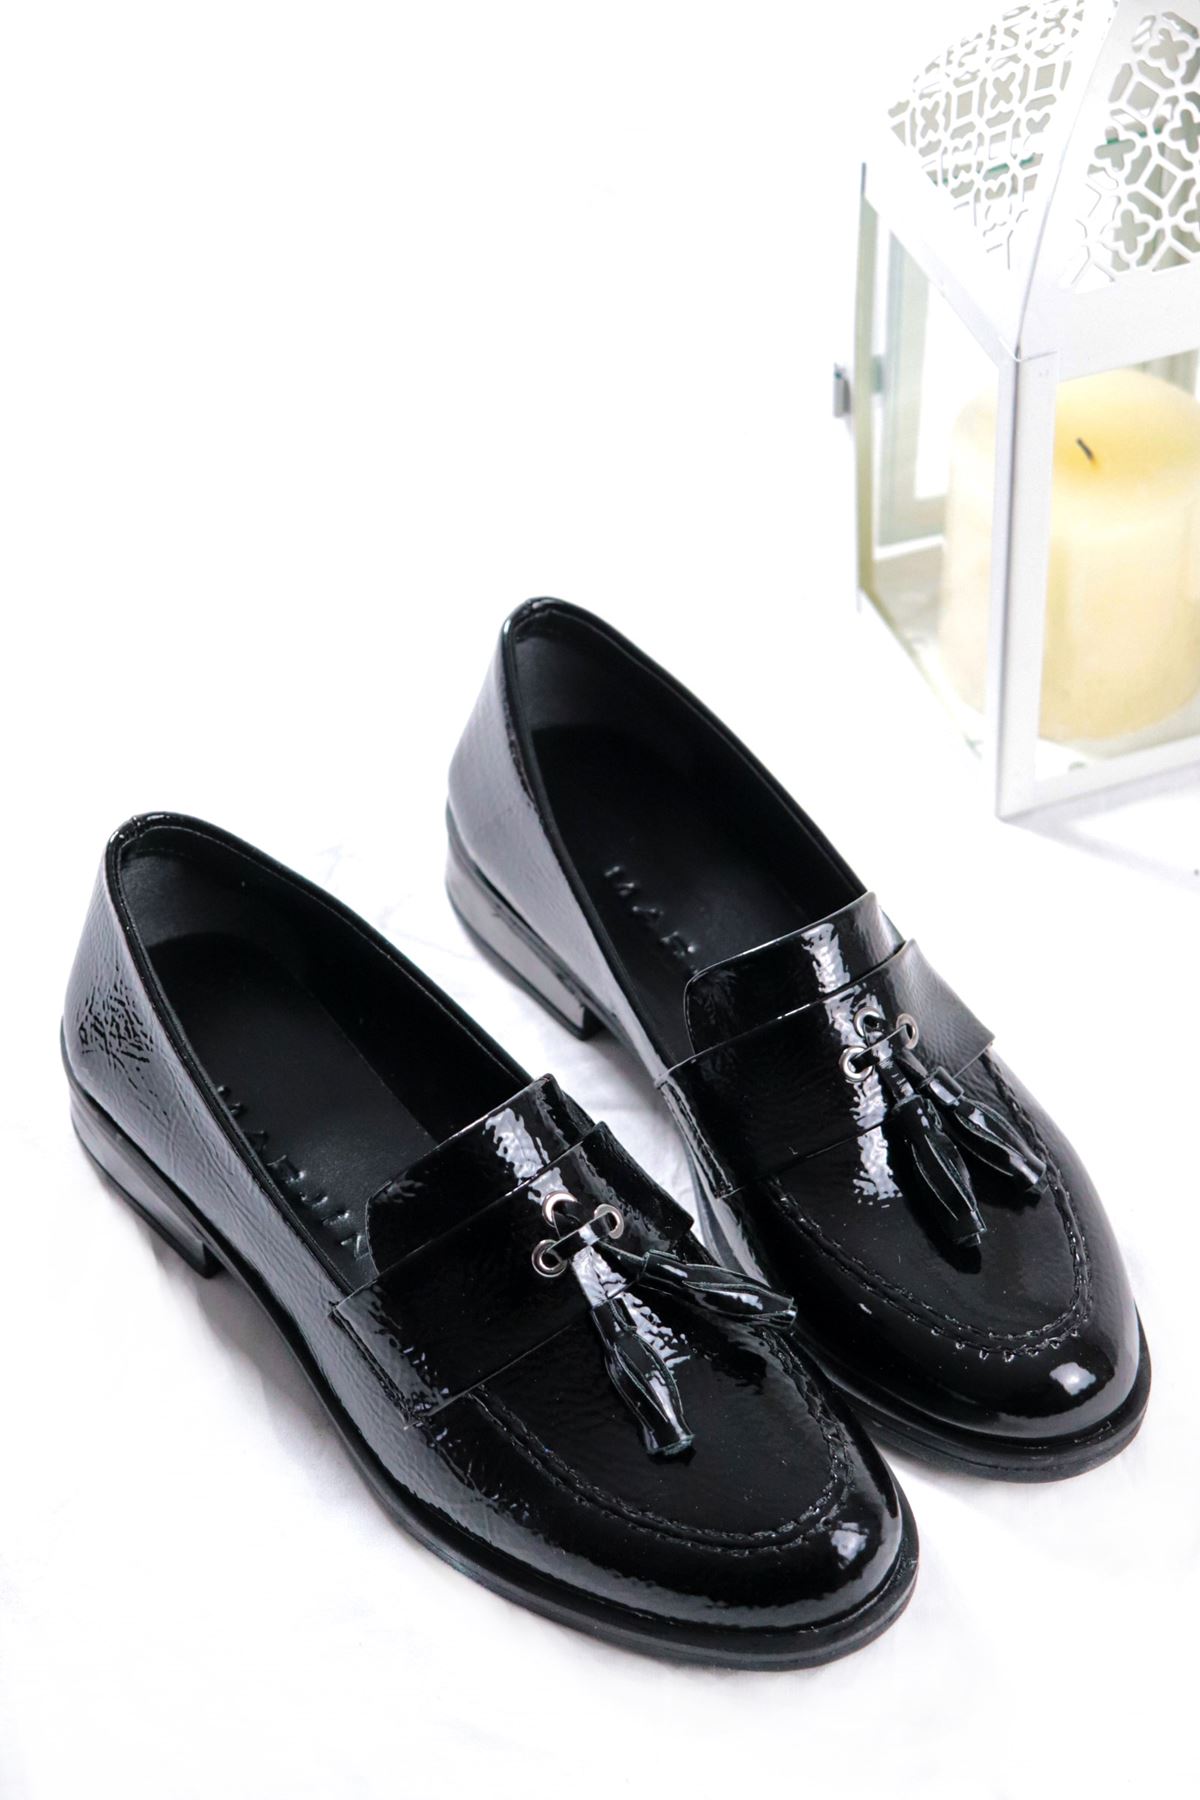 Trendayakkabı - Siyah Rugan Loafer Kadın Ayakkabı